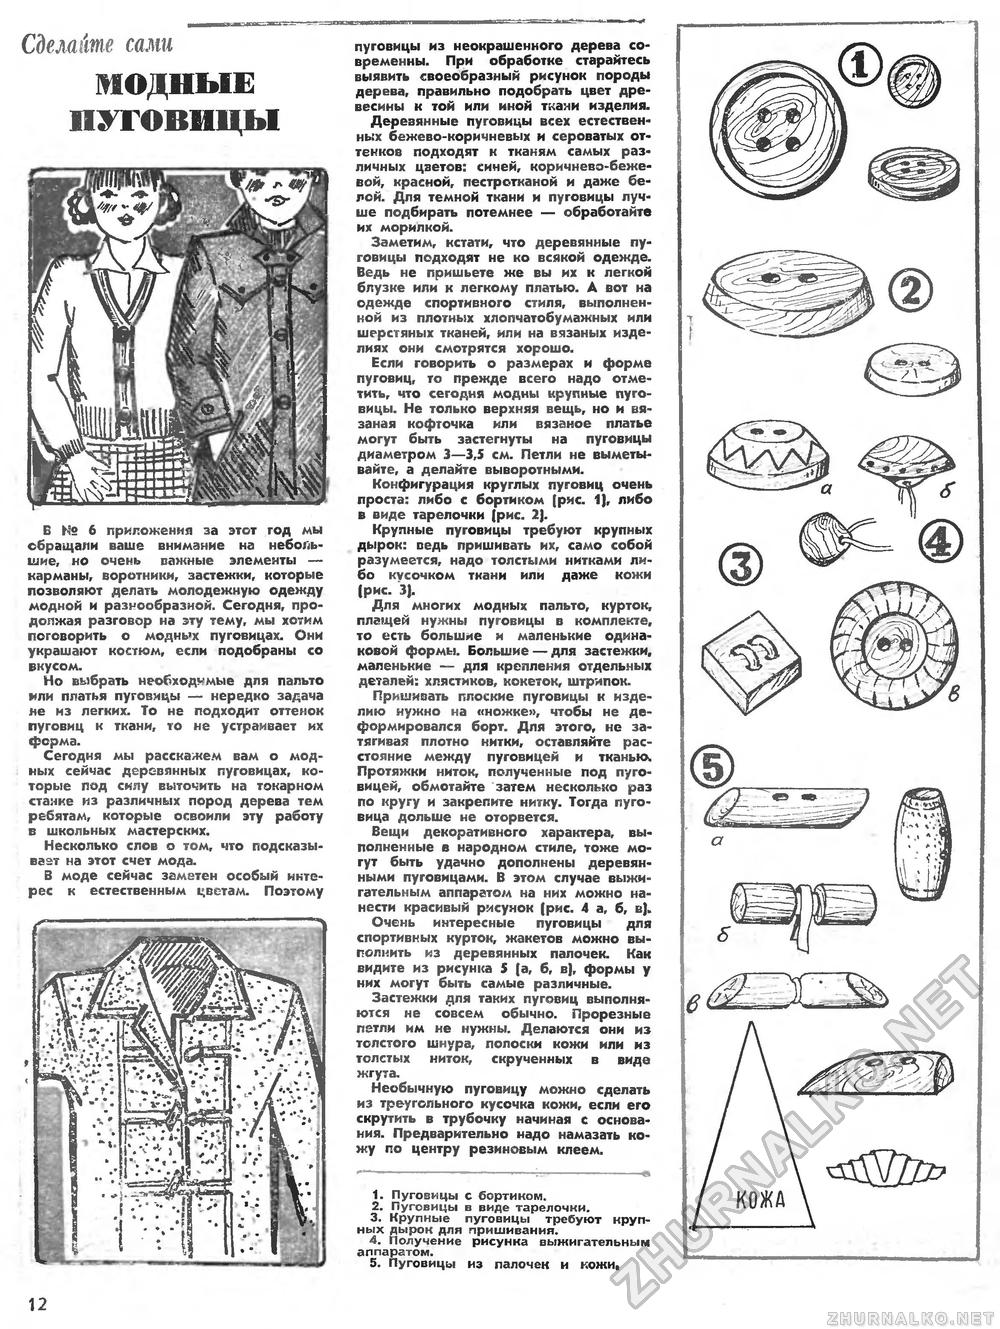 Юный техник - для умелых рук 1978-12, страница 12